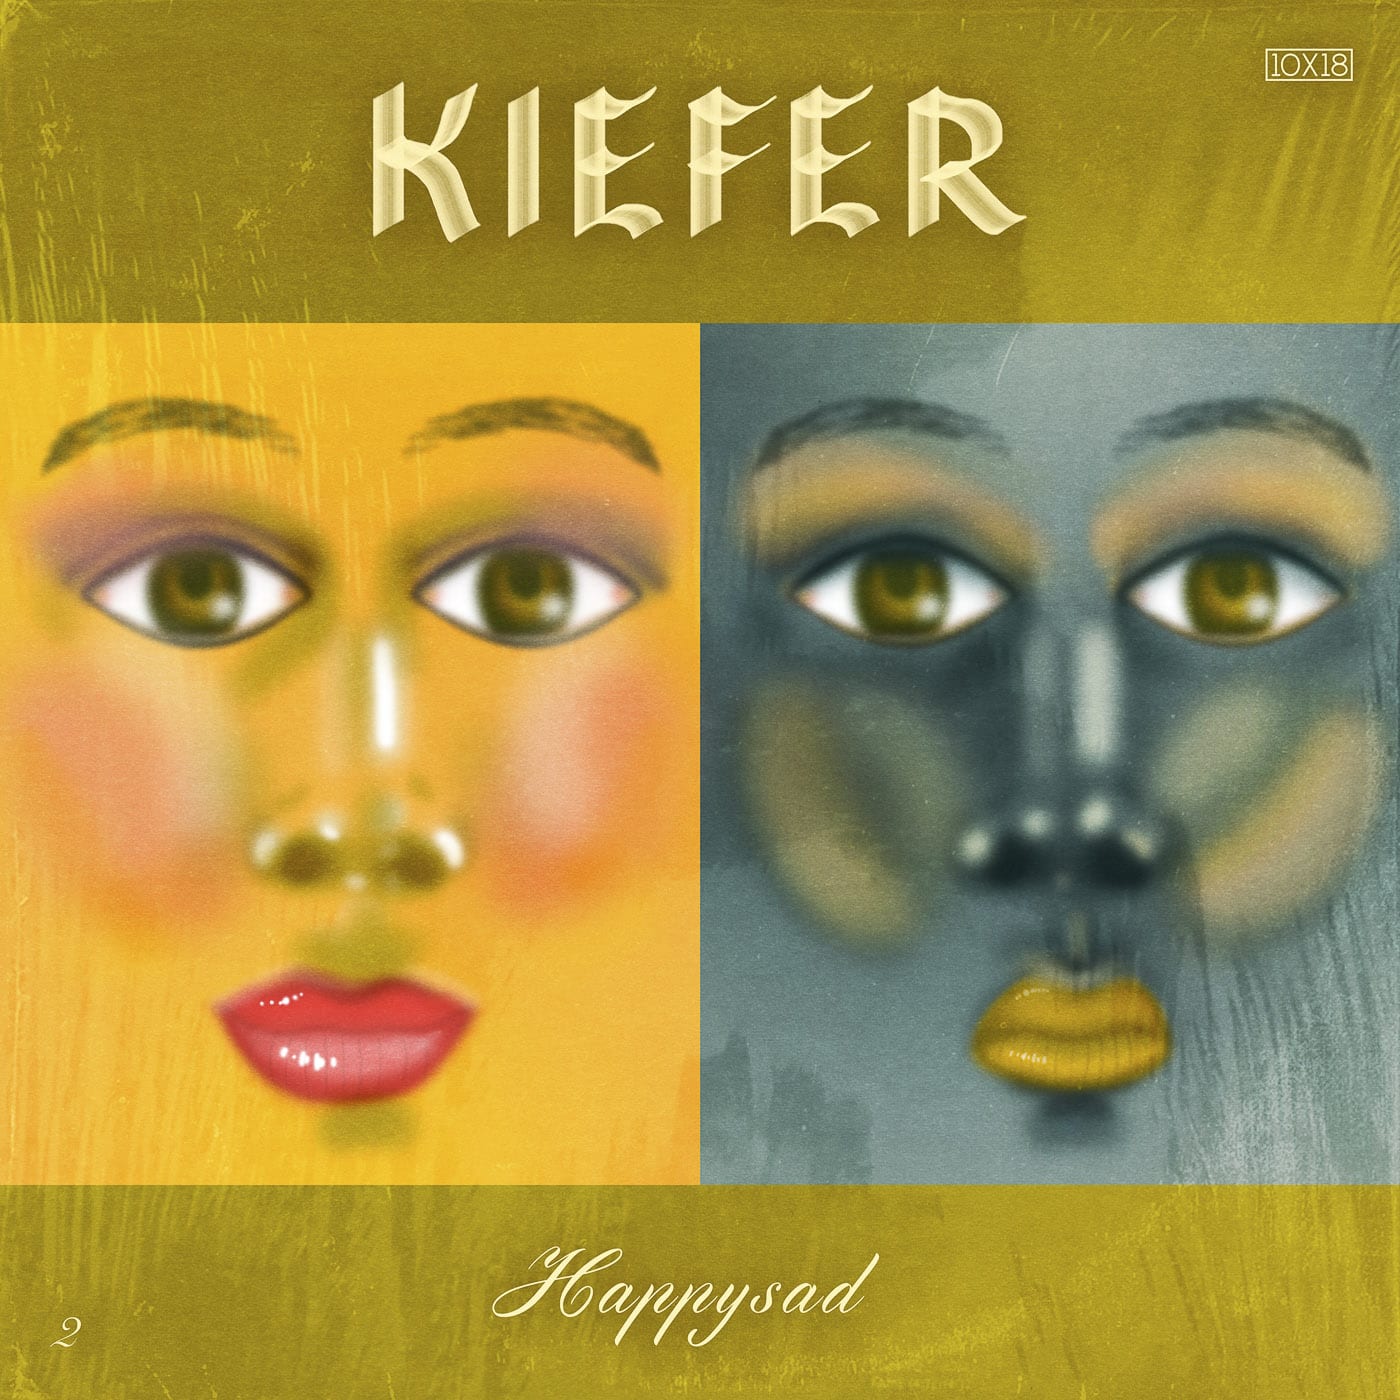 Happysad by Kiefer